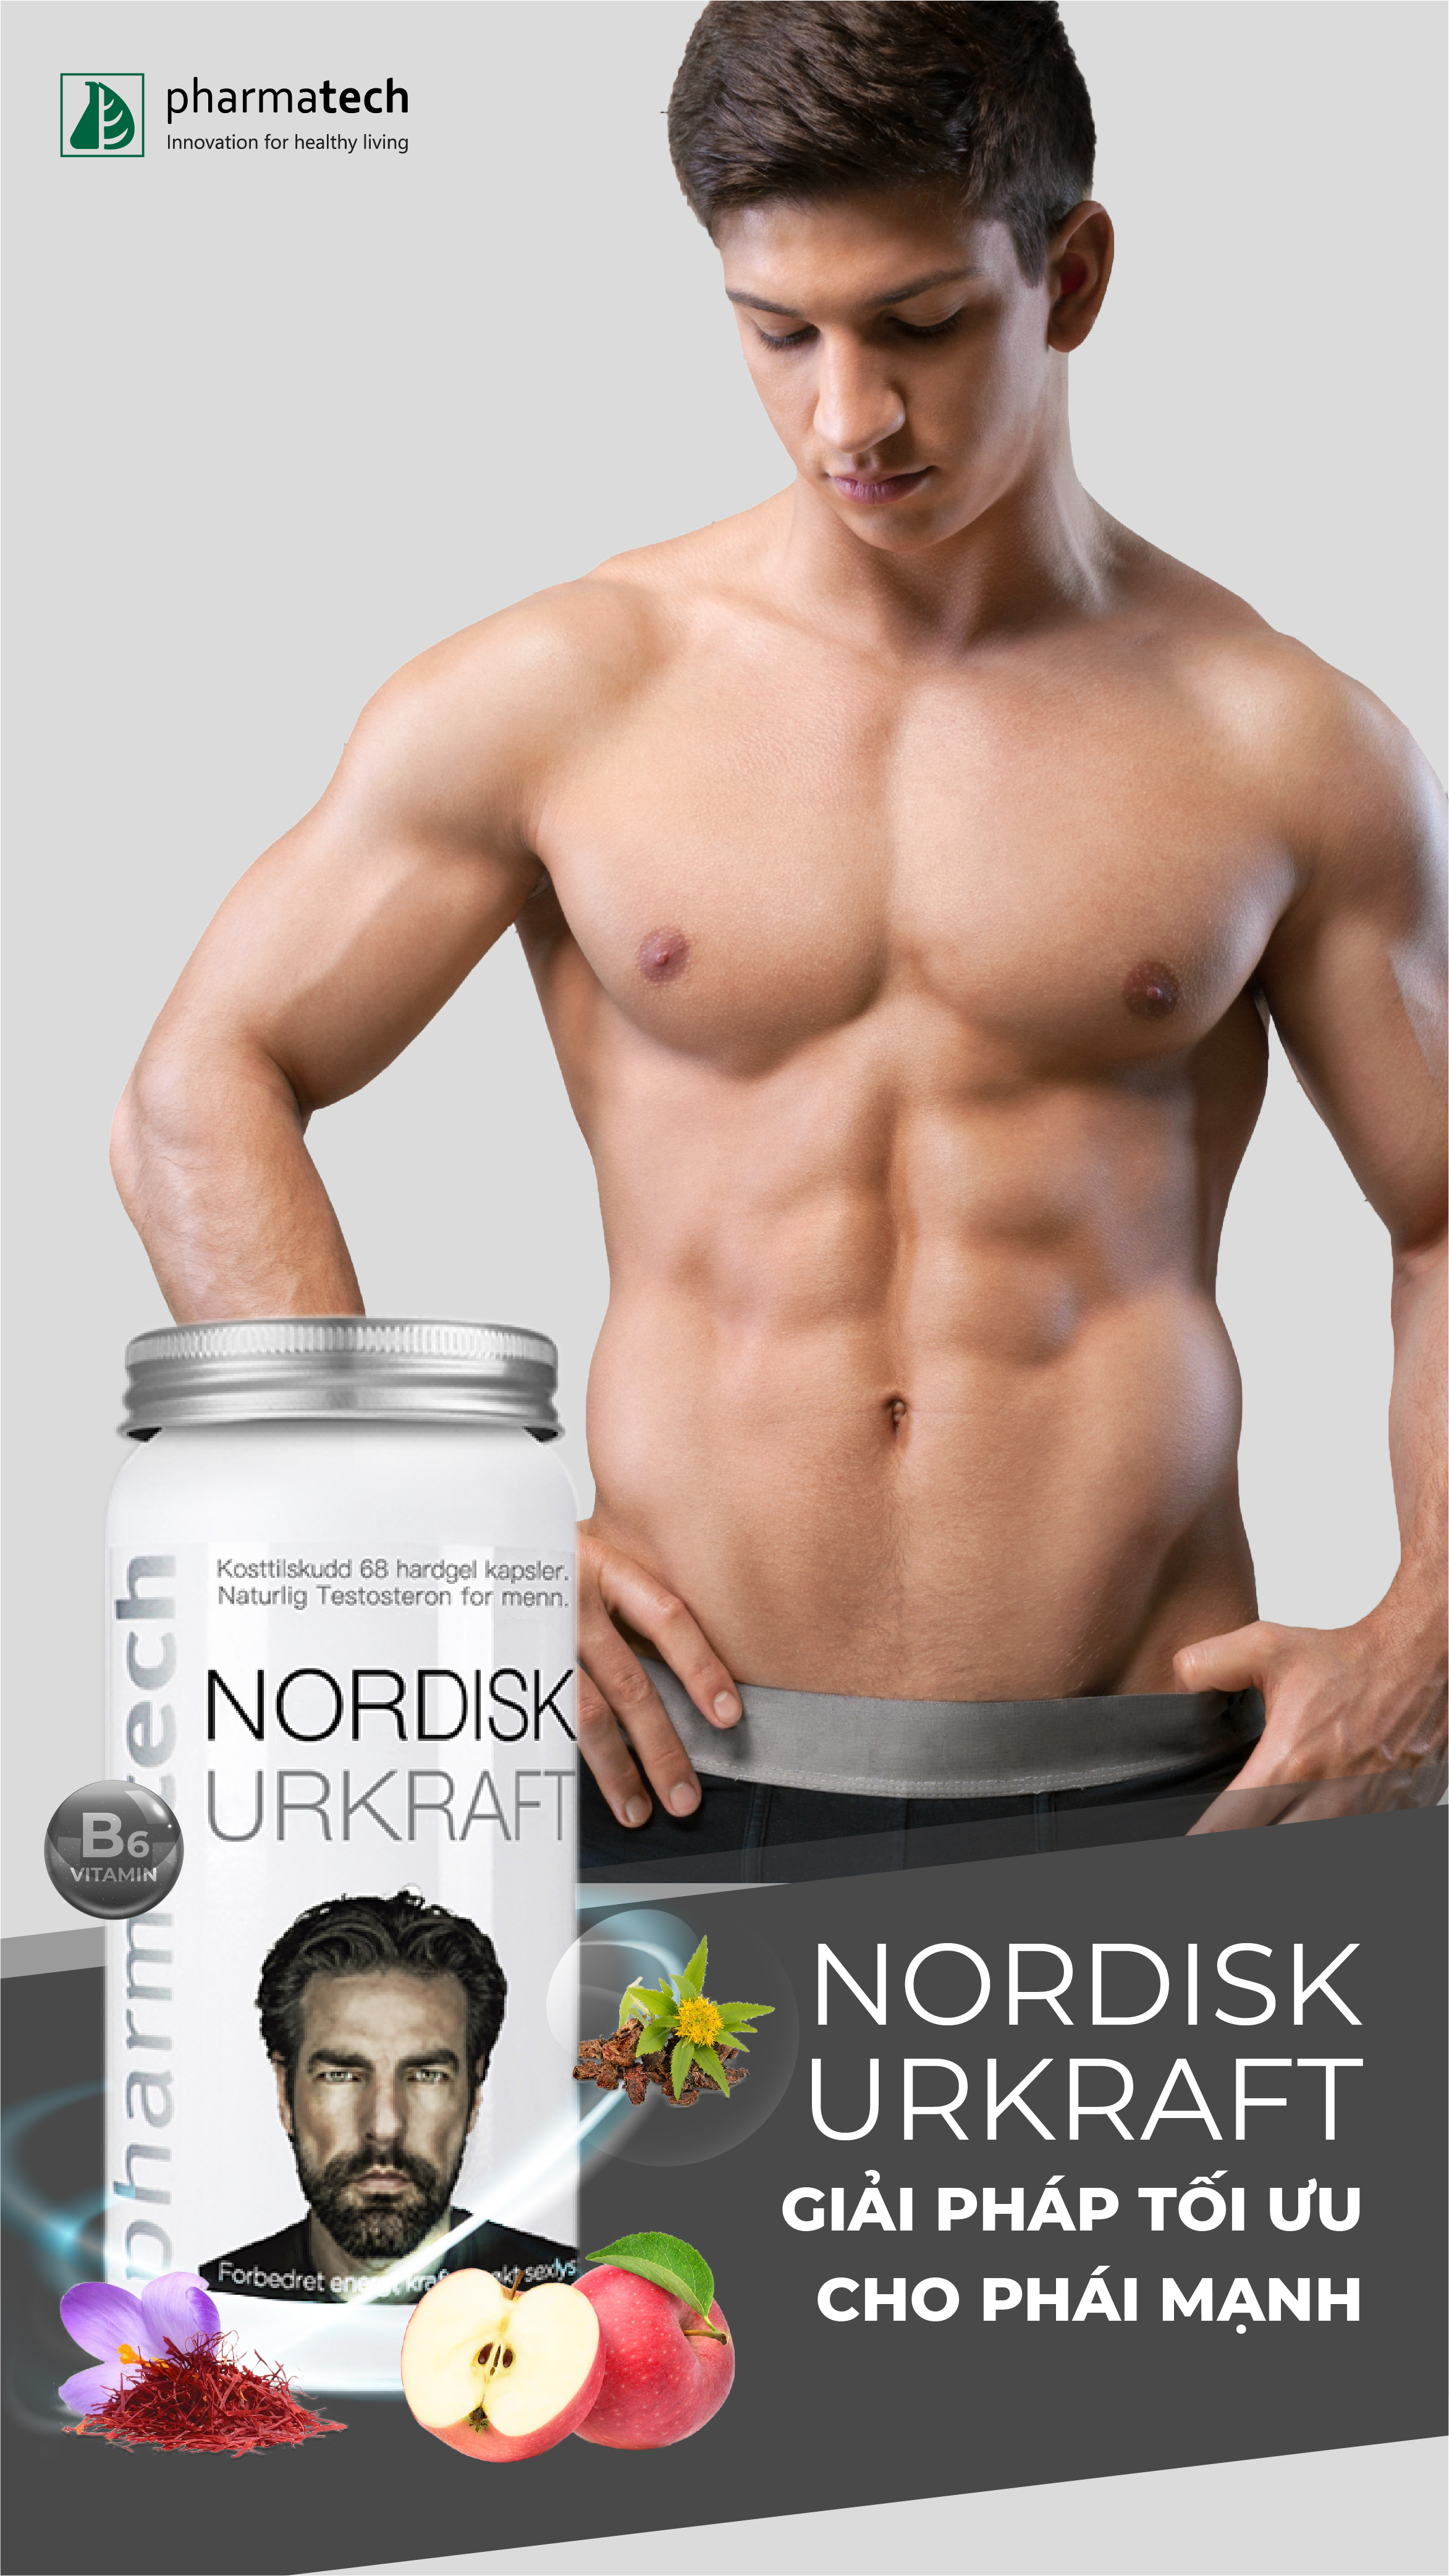 Nordisk Urkraft - sản phẩm dành cho nam giới đạt tiêu chuẩn EU và FDA Mỹ